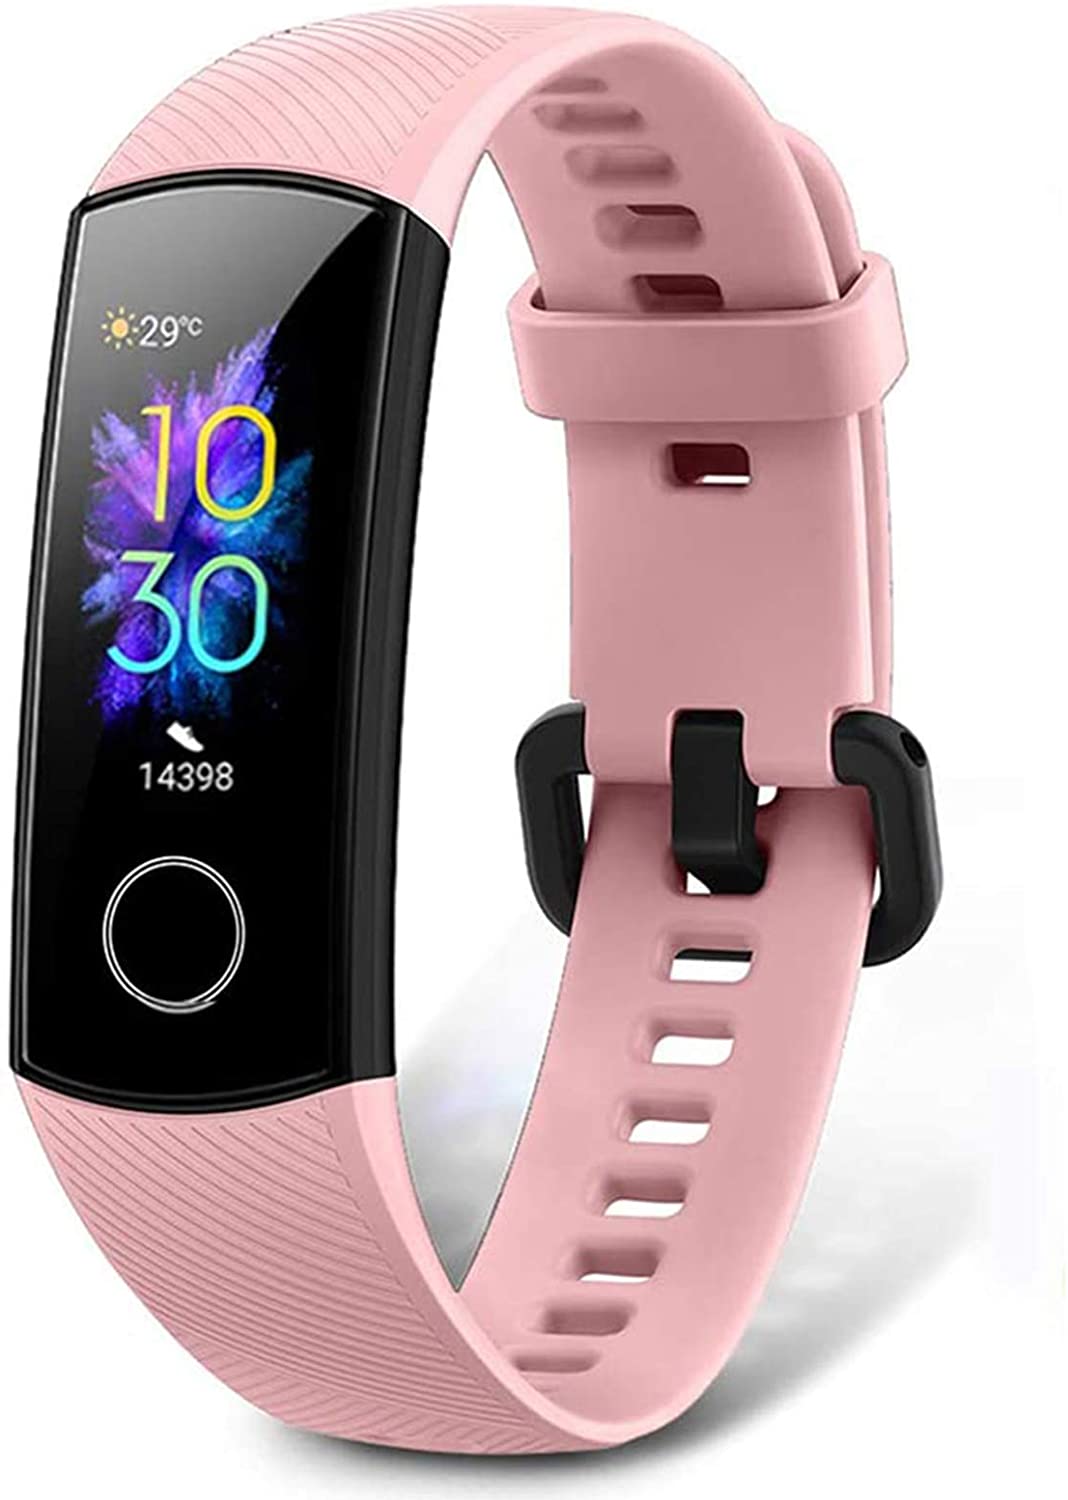 Vedi su Amazon il prezzo aggiornato per HONOR Band 5 Smartwatch